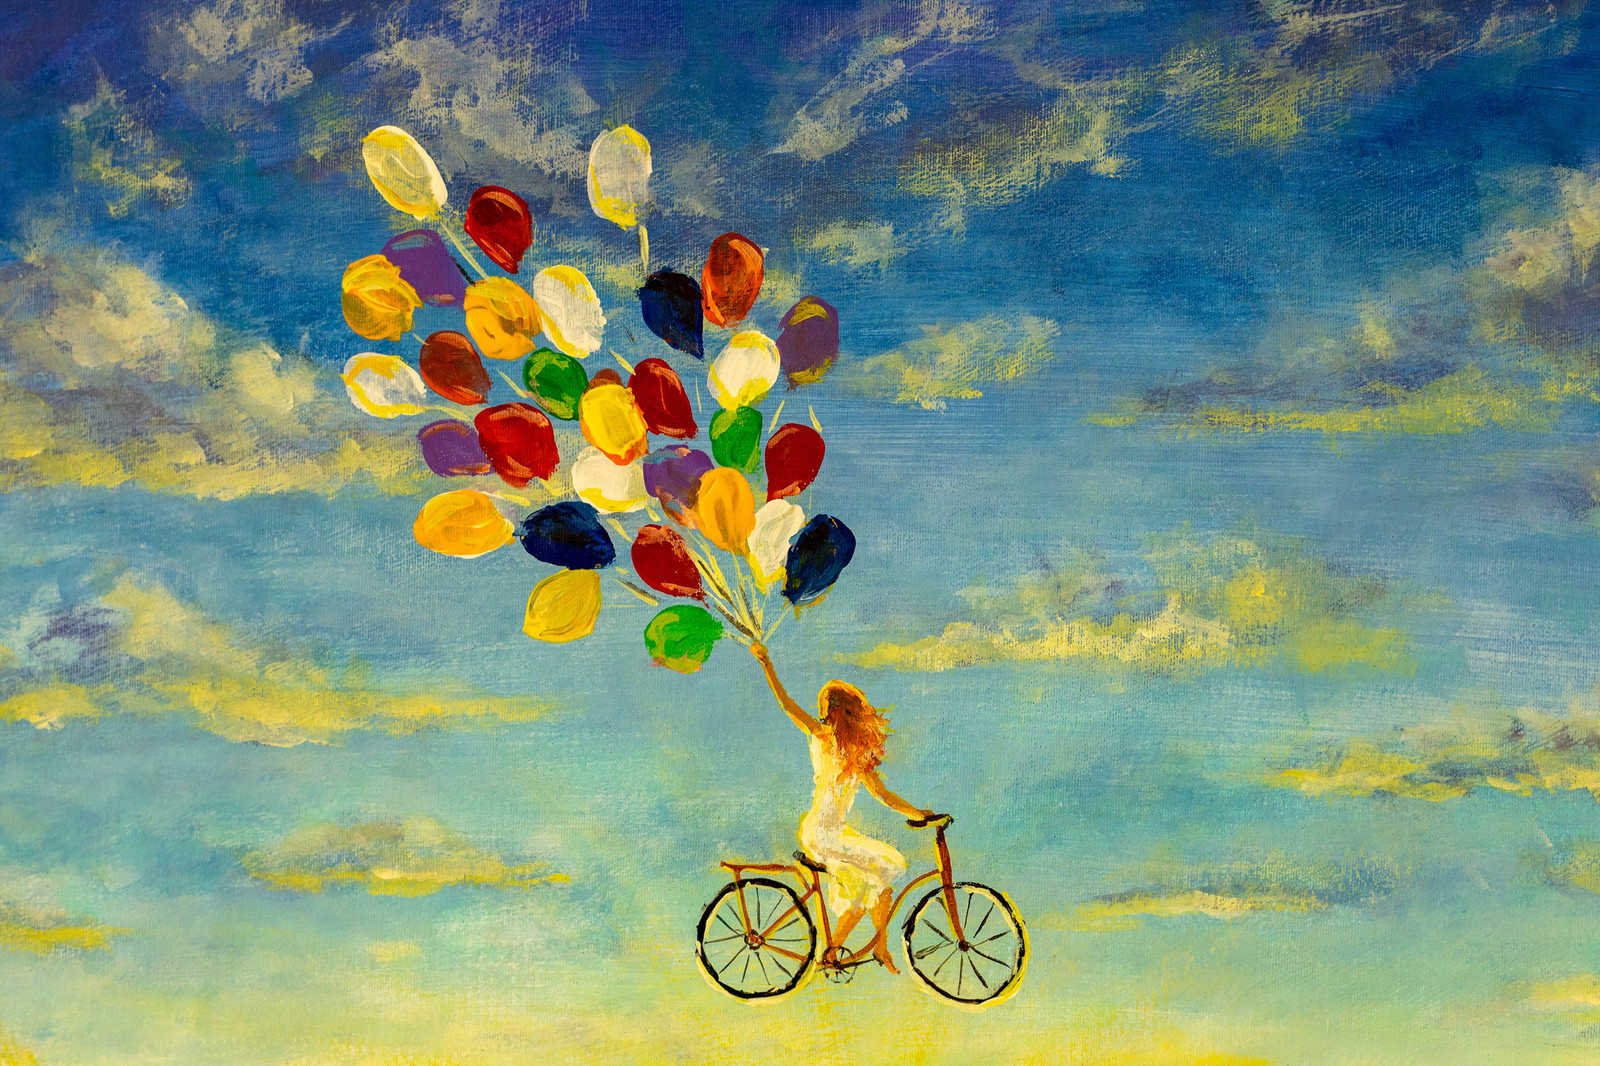             Peinture sur toile avec femme sur vélo dans le ciel - 0,90 m x 0,60 m
        